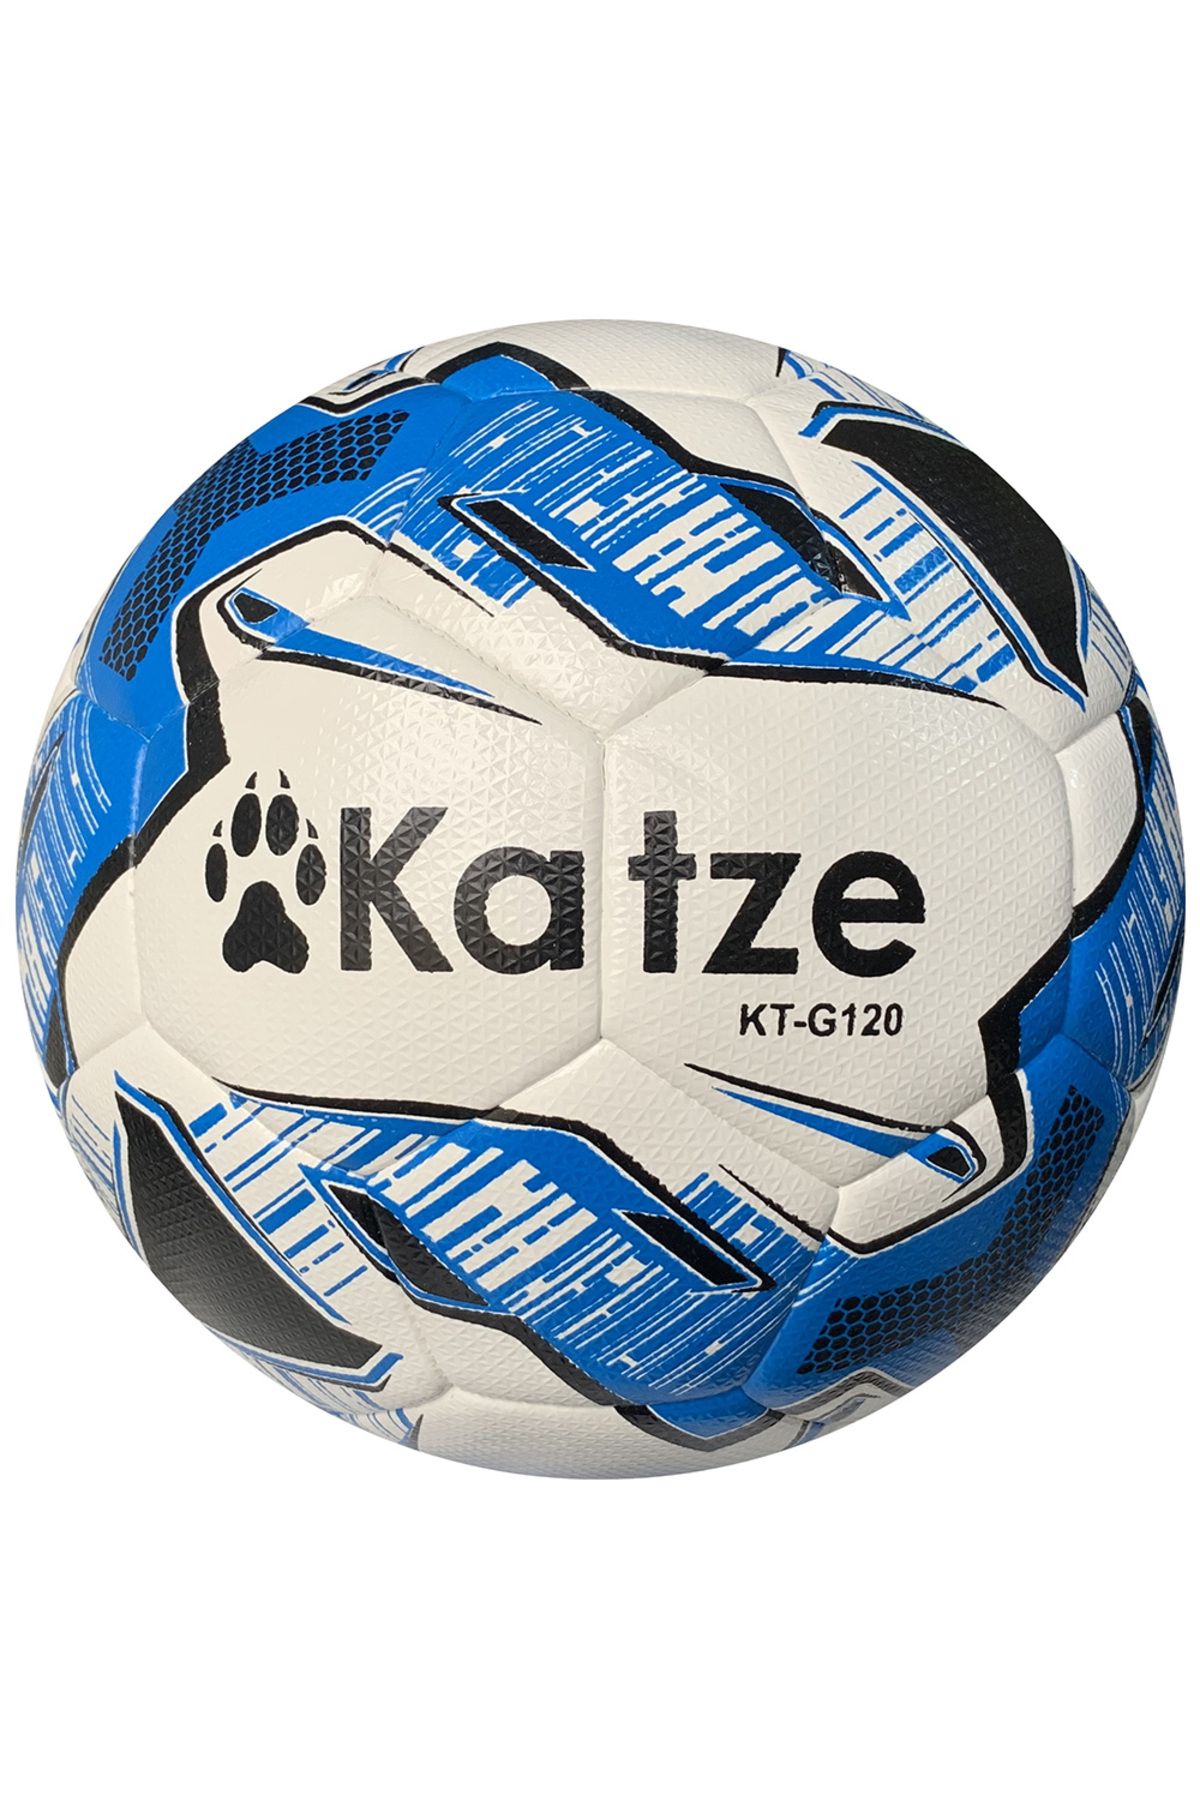 Katze KT-G120 Hybrid Futbol Topu 5 Numara